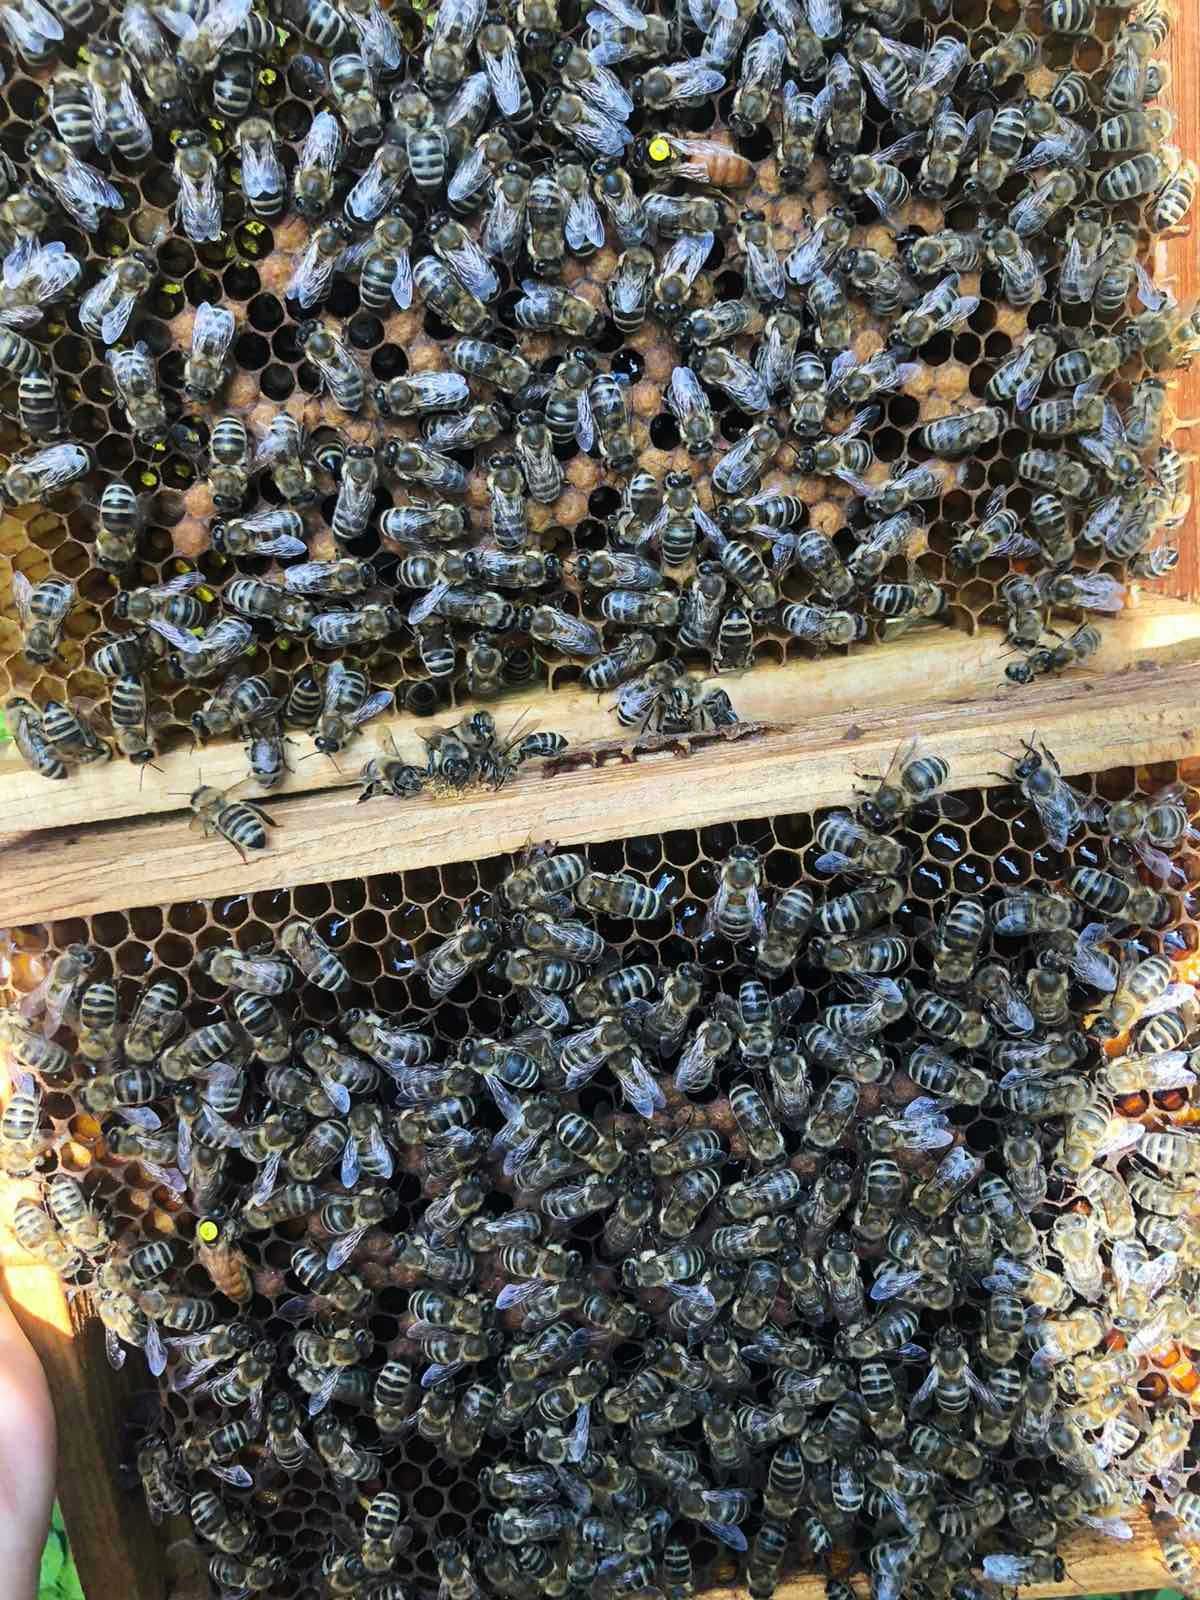 Бджолопакети, Бджоломатка Карніка Вільного або Штучного запліднення.